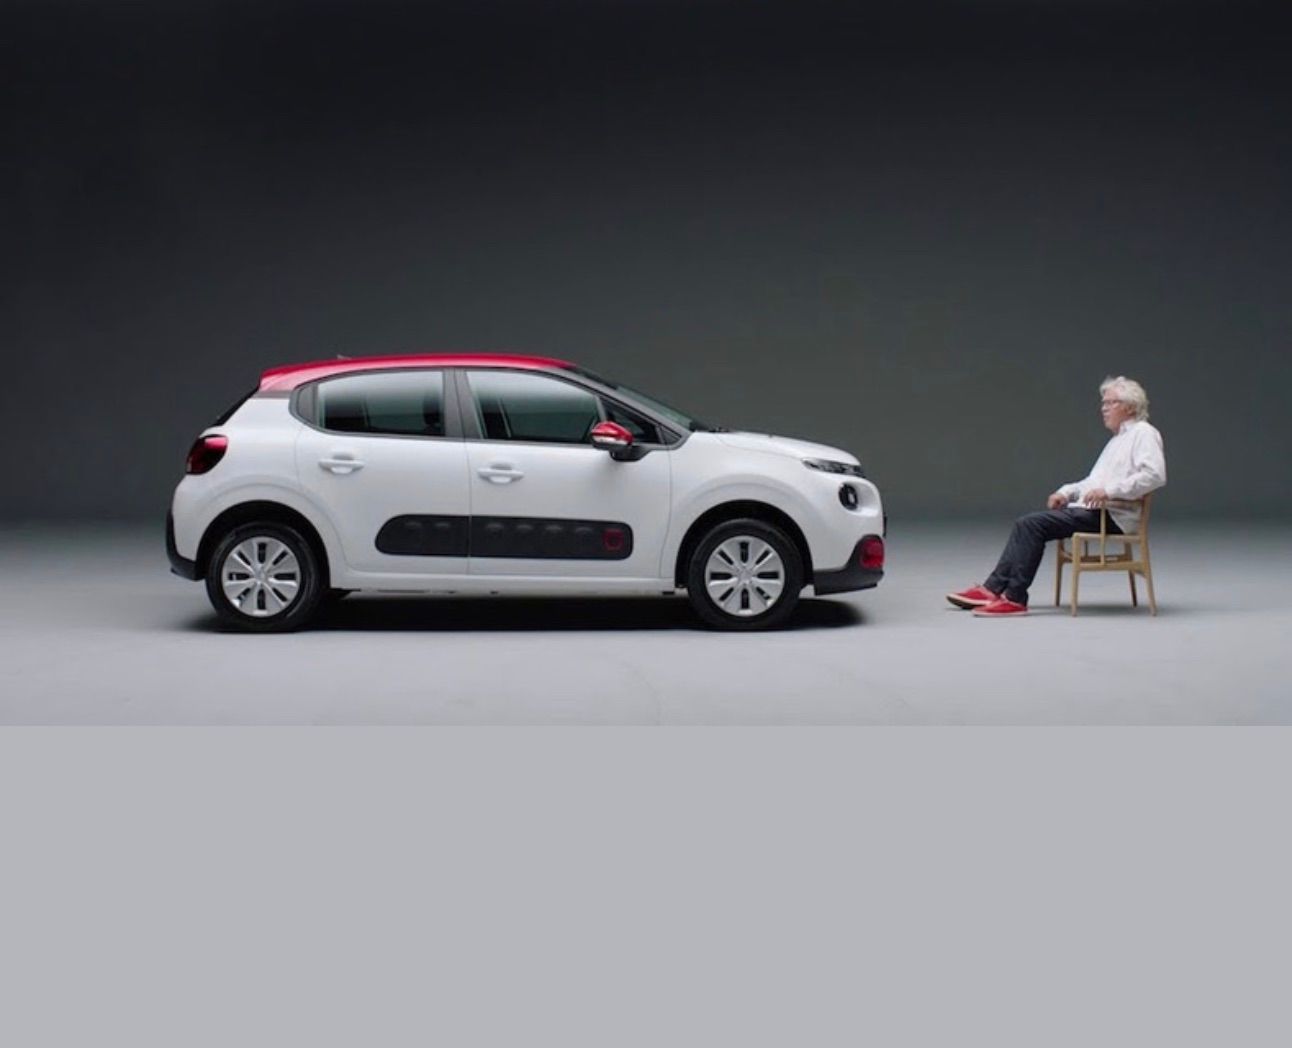 Jørgen Leth i Citroën-reklamen med pay-off'et ”Leth at elske”. Oplagt at parre en fransk bil med hyperæstetikeren Leth. Thygesen og Cramon er glade. Billede fra kampagnen.